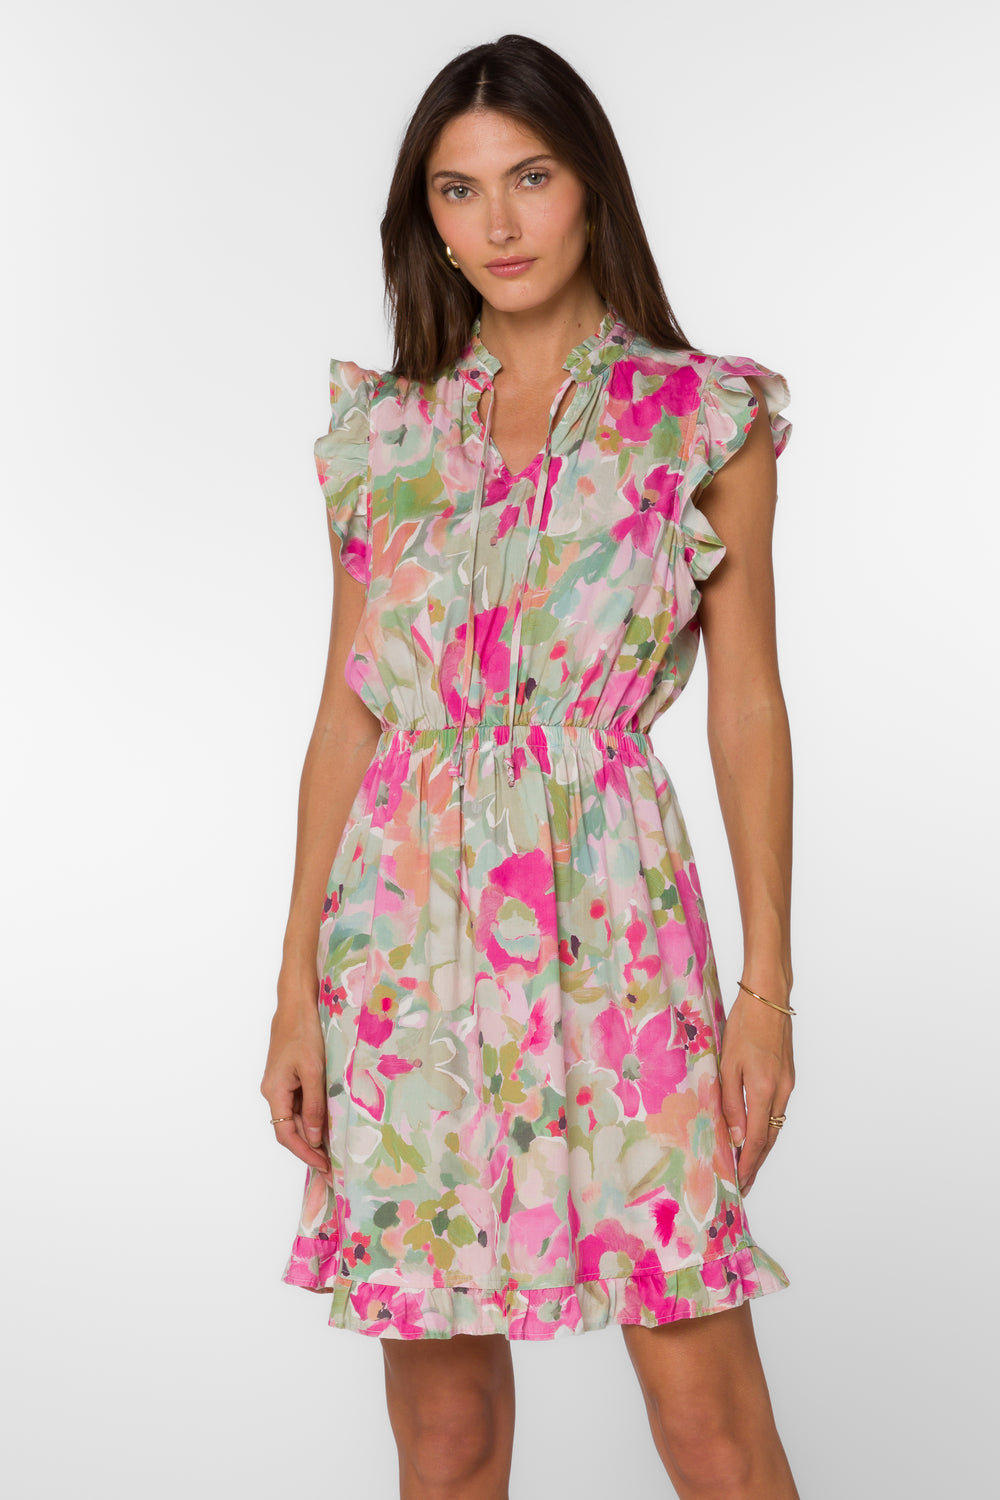 Inessa Painted Floral Dress - Dresses - Velvet Heart Clothing